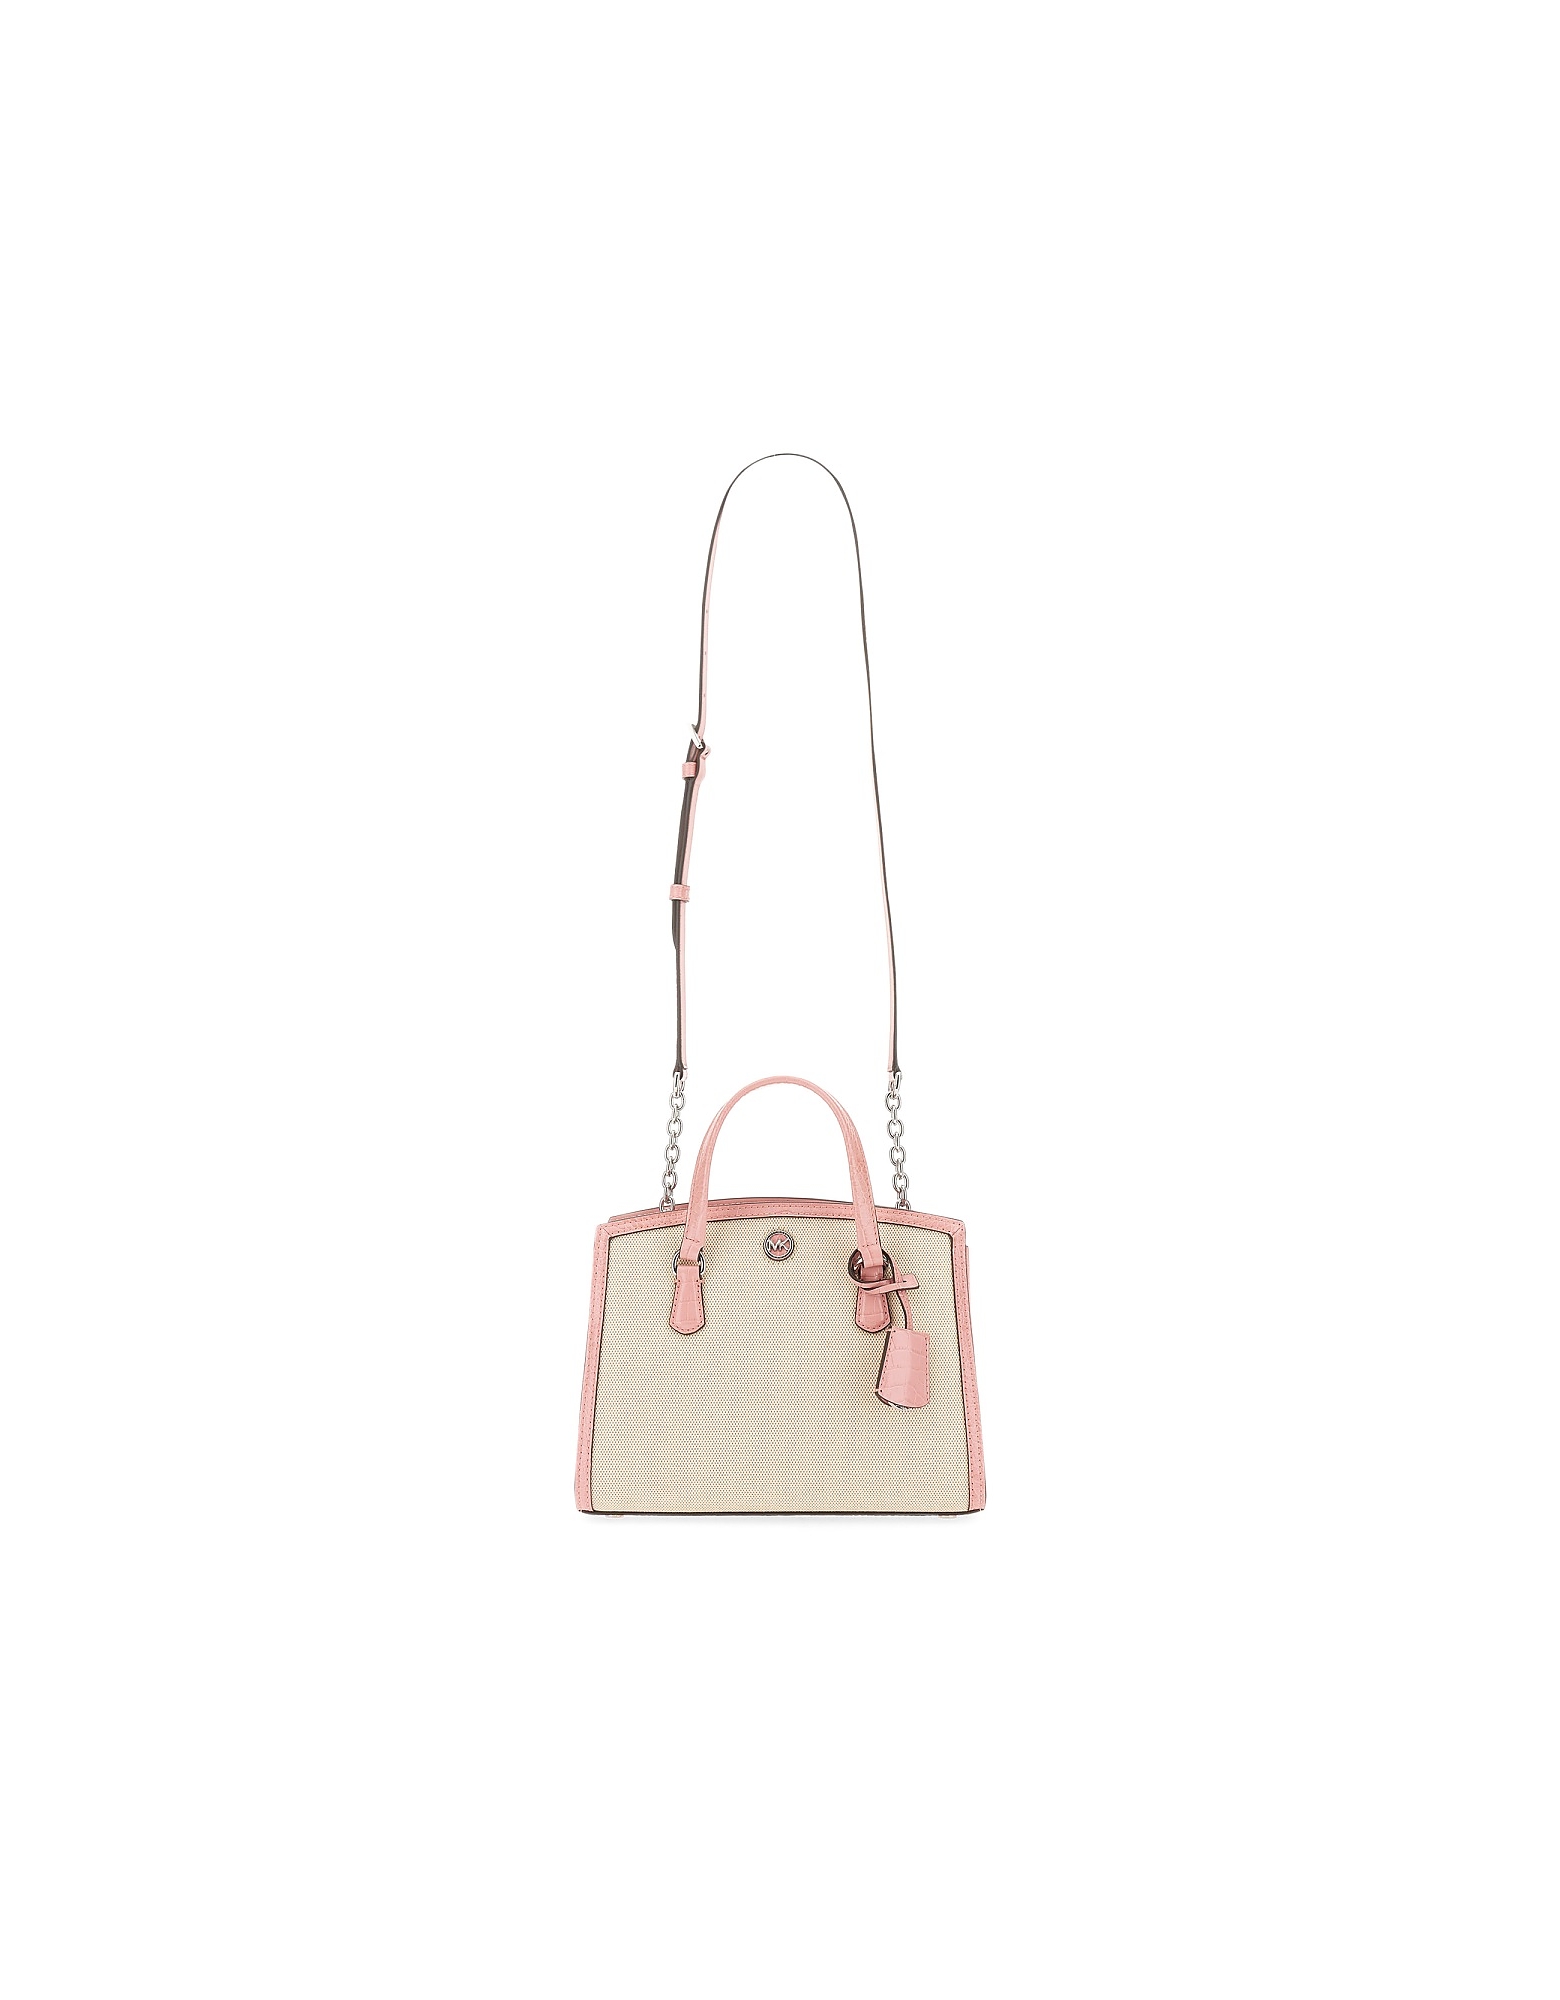 Michael Kors Designer Handbags Chantal Bag. In Rose